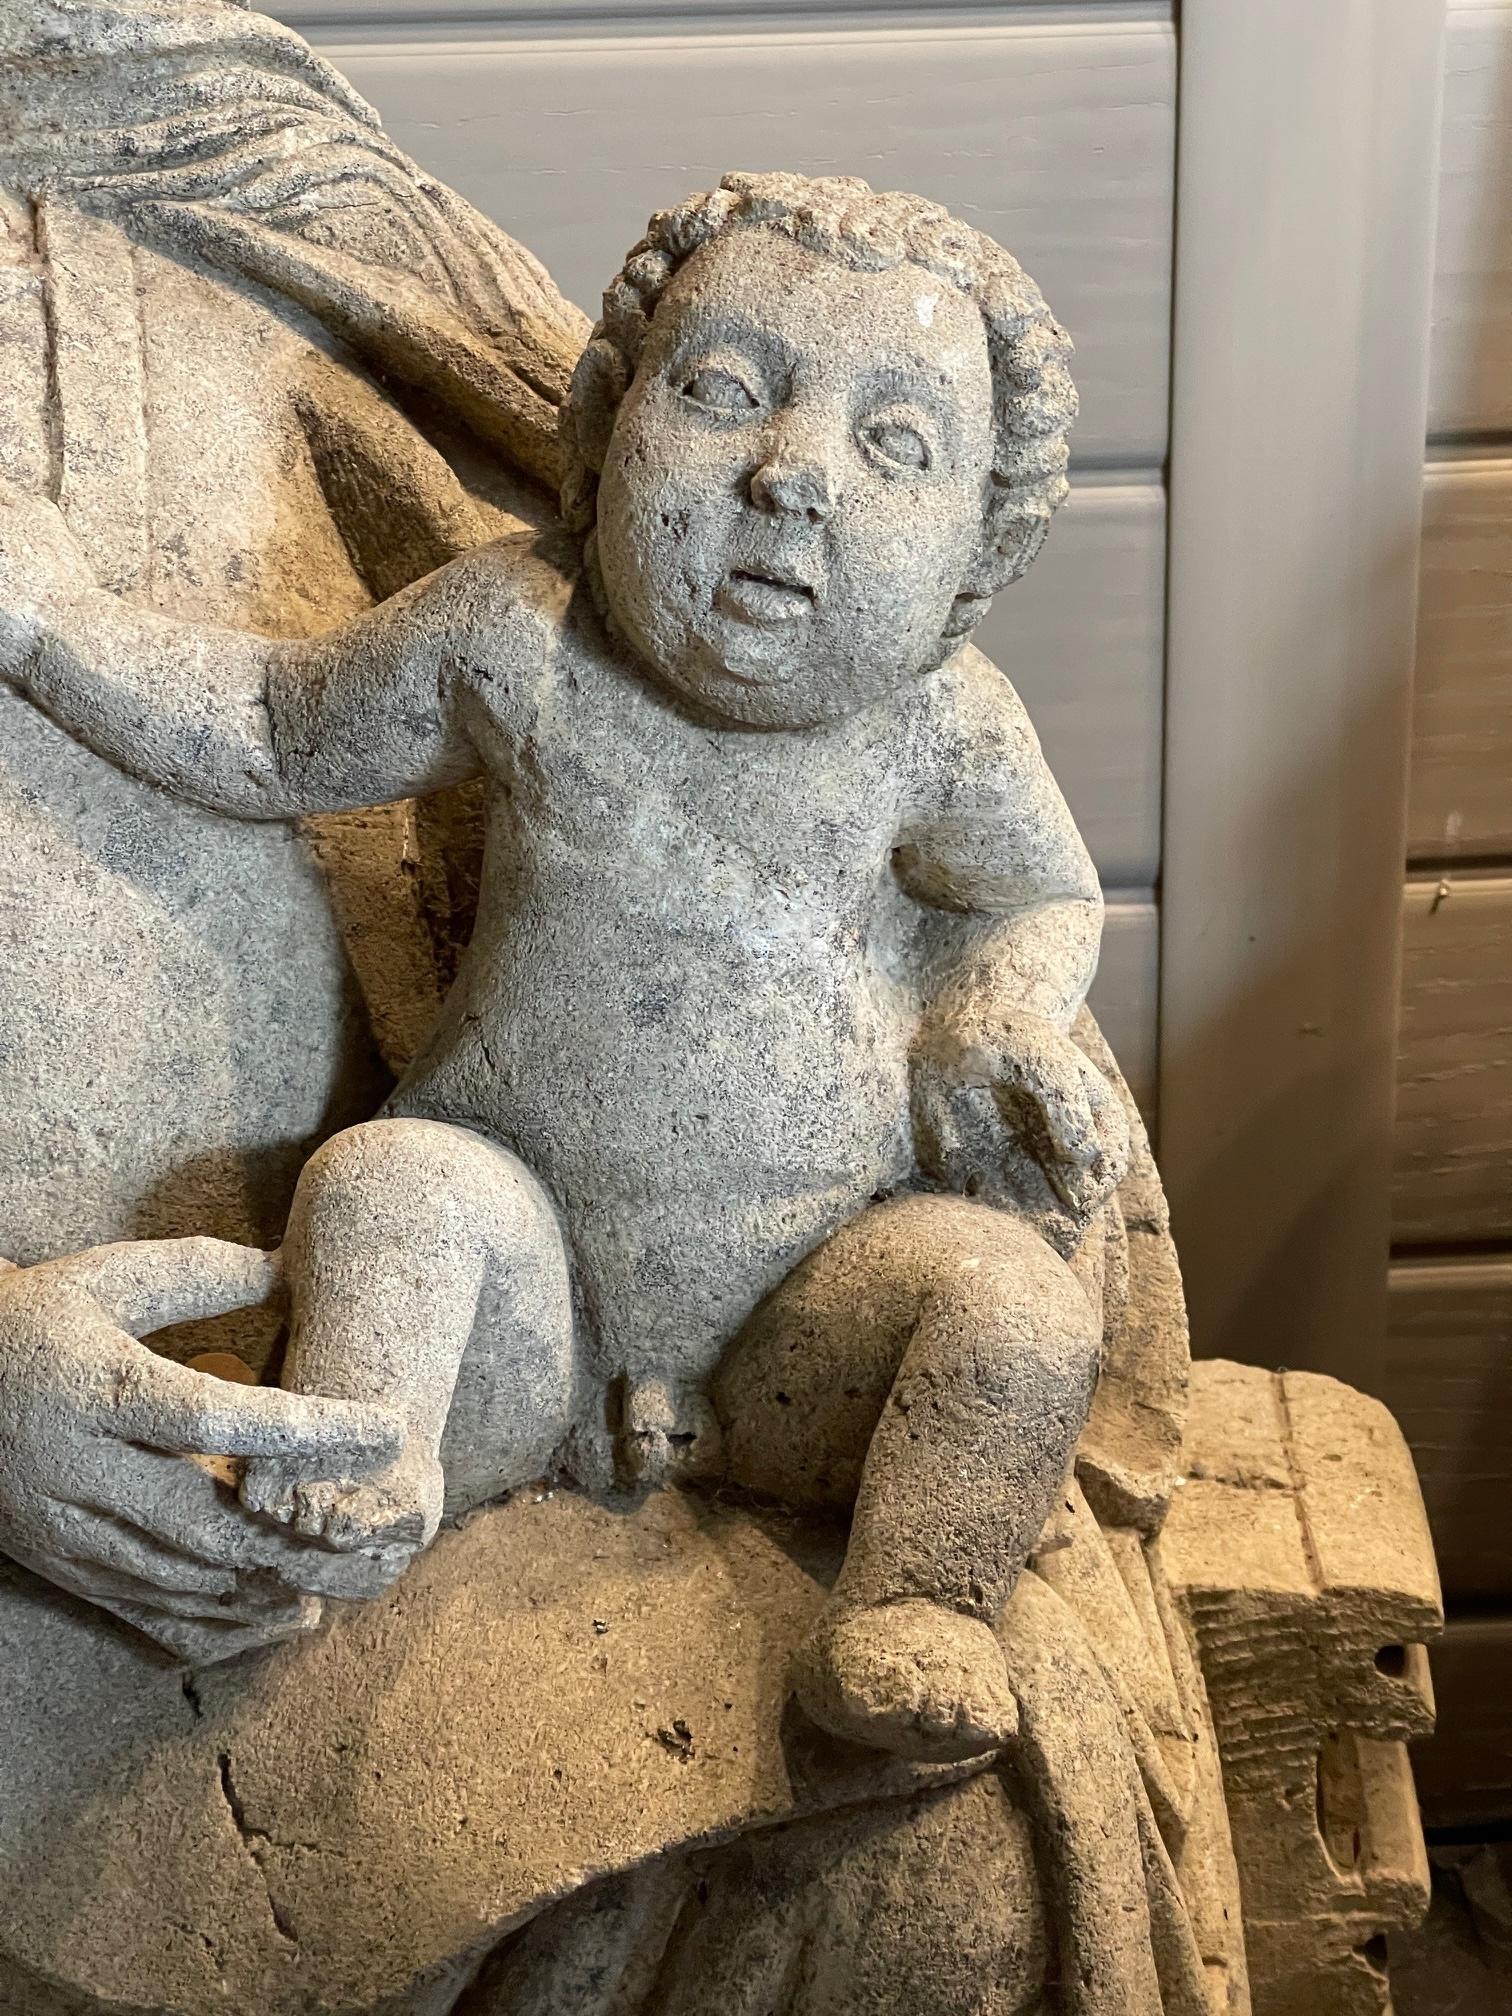 Magnifique sculpture en pierre calcaire de la Madone et de l'enfant assis sur le trône de la connaissance, vers 1350, avec 6 doigts à la main droite, en excellent état.

Taille 78 cm de haut 48 de large 37 de profondeur
